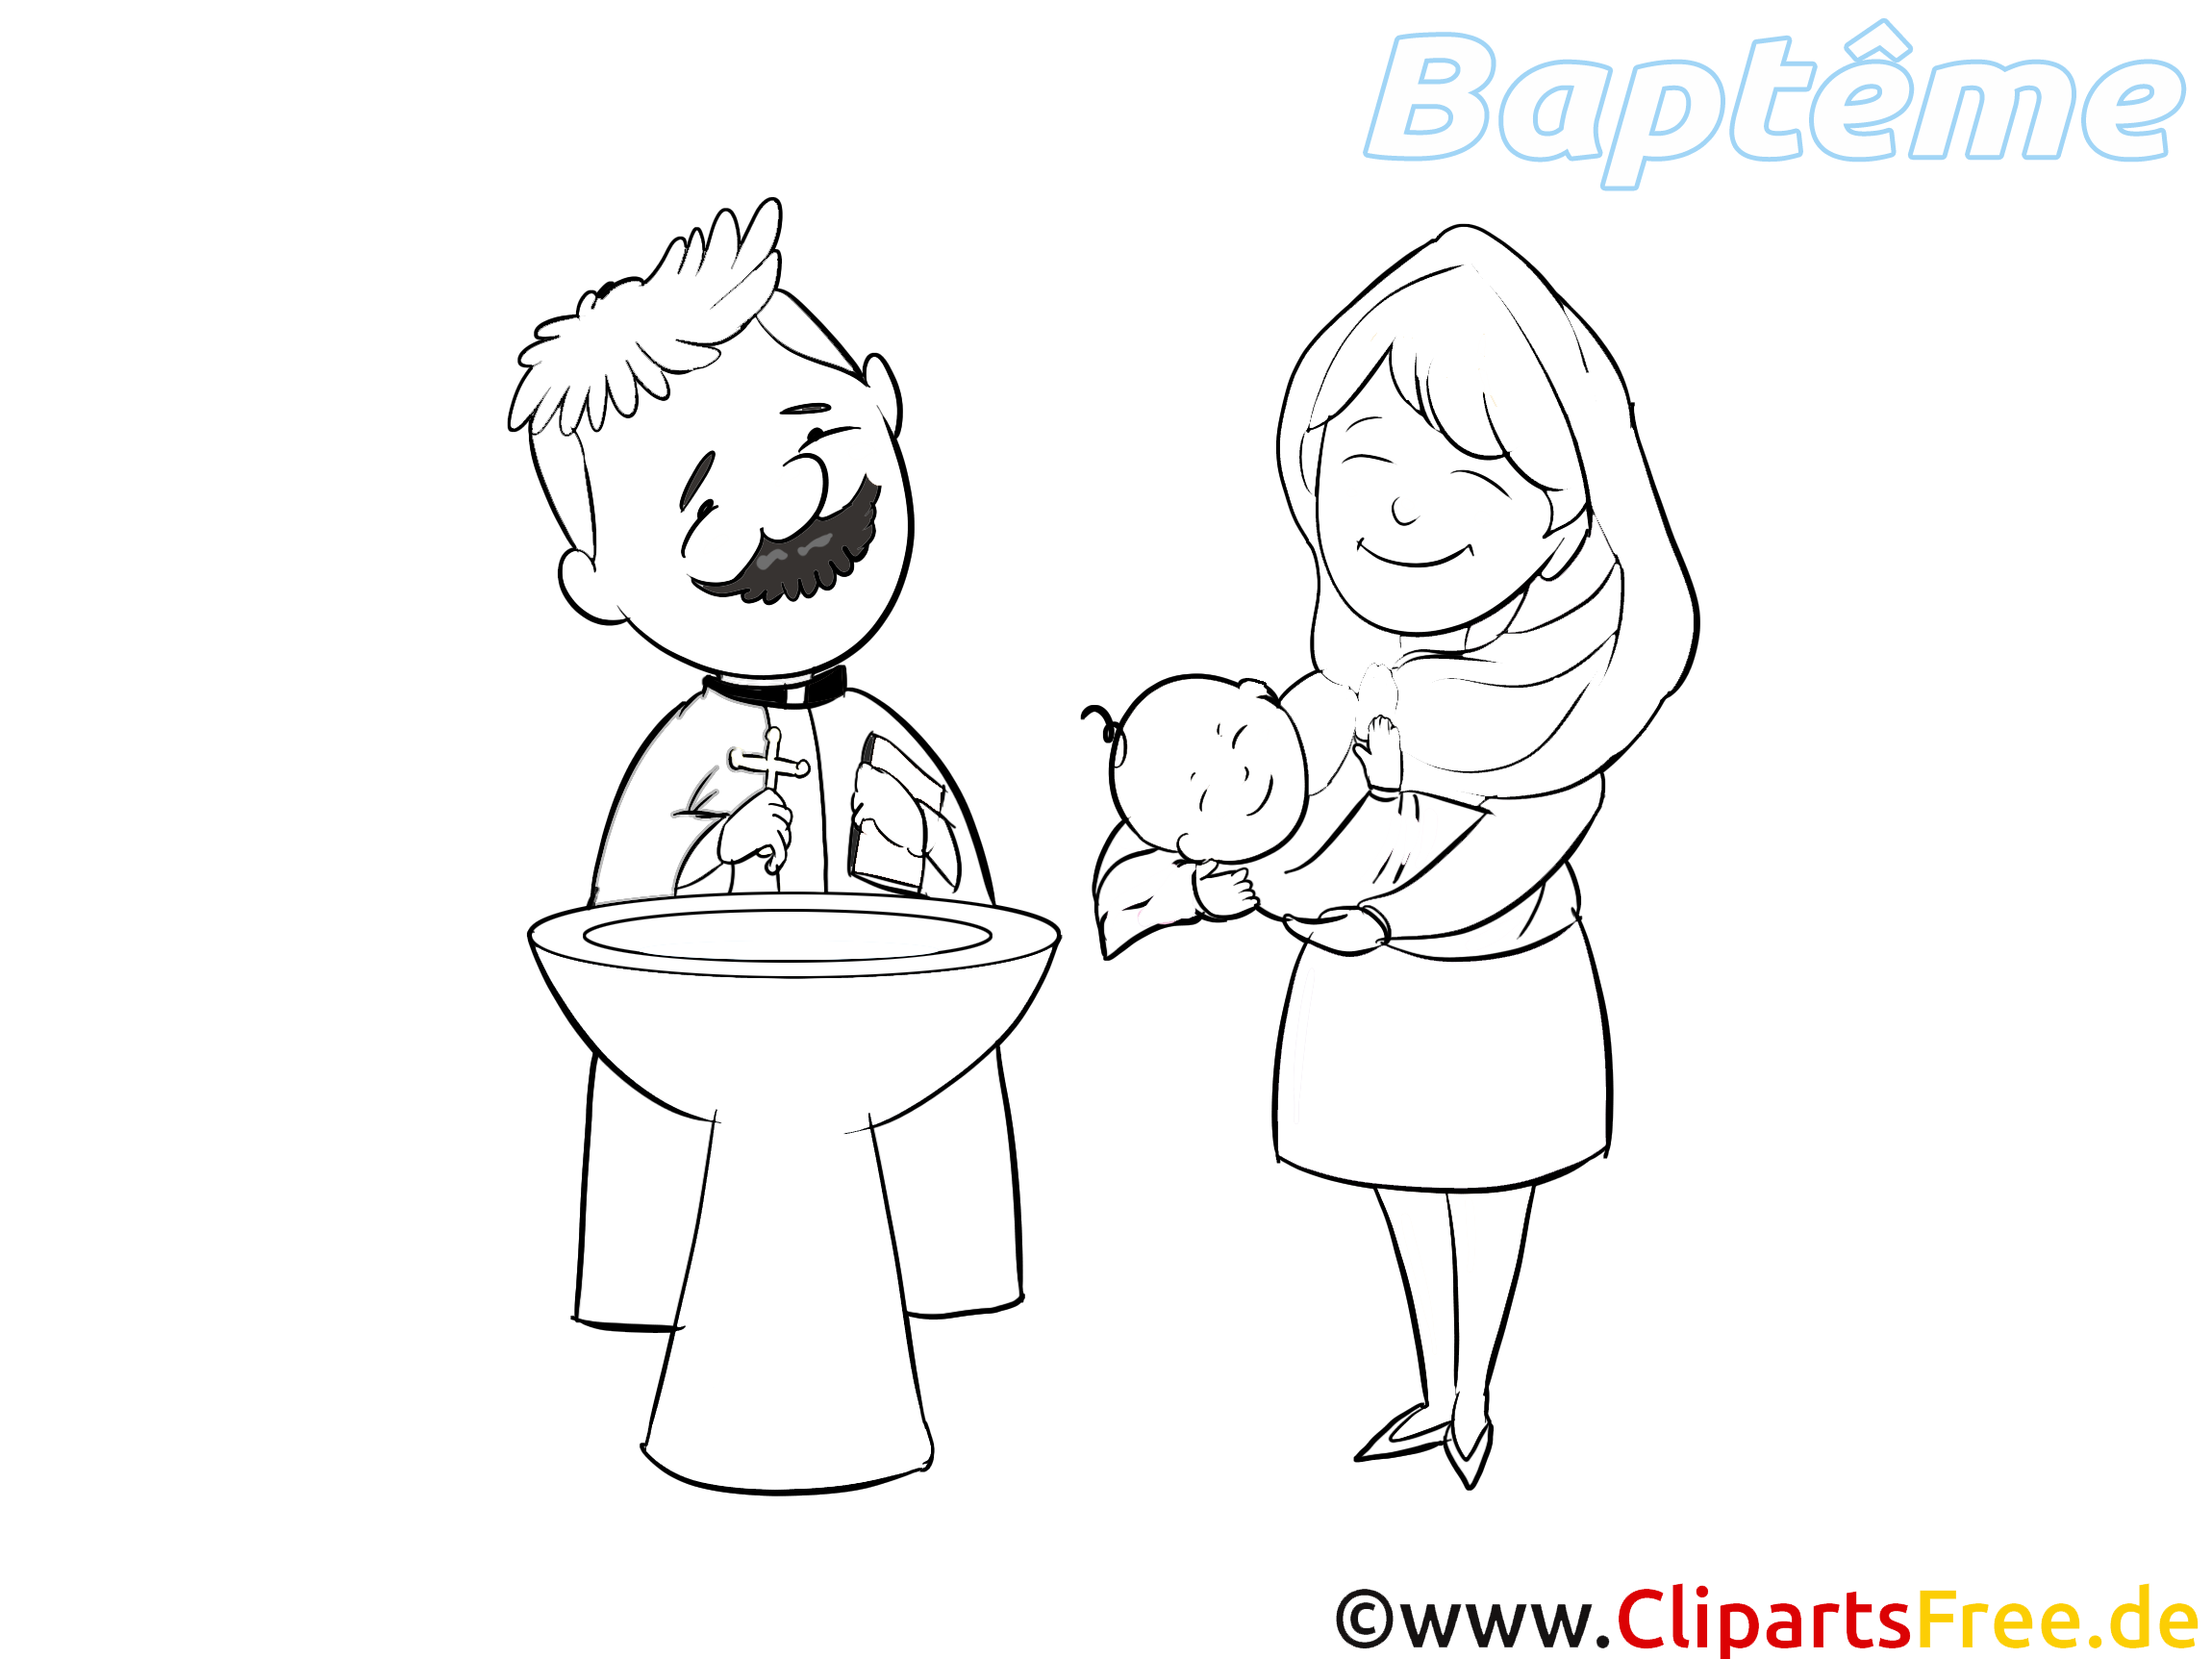 Prêtre images à colorier – Baptême clipart gratuit